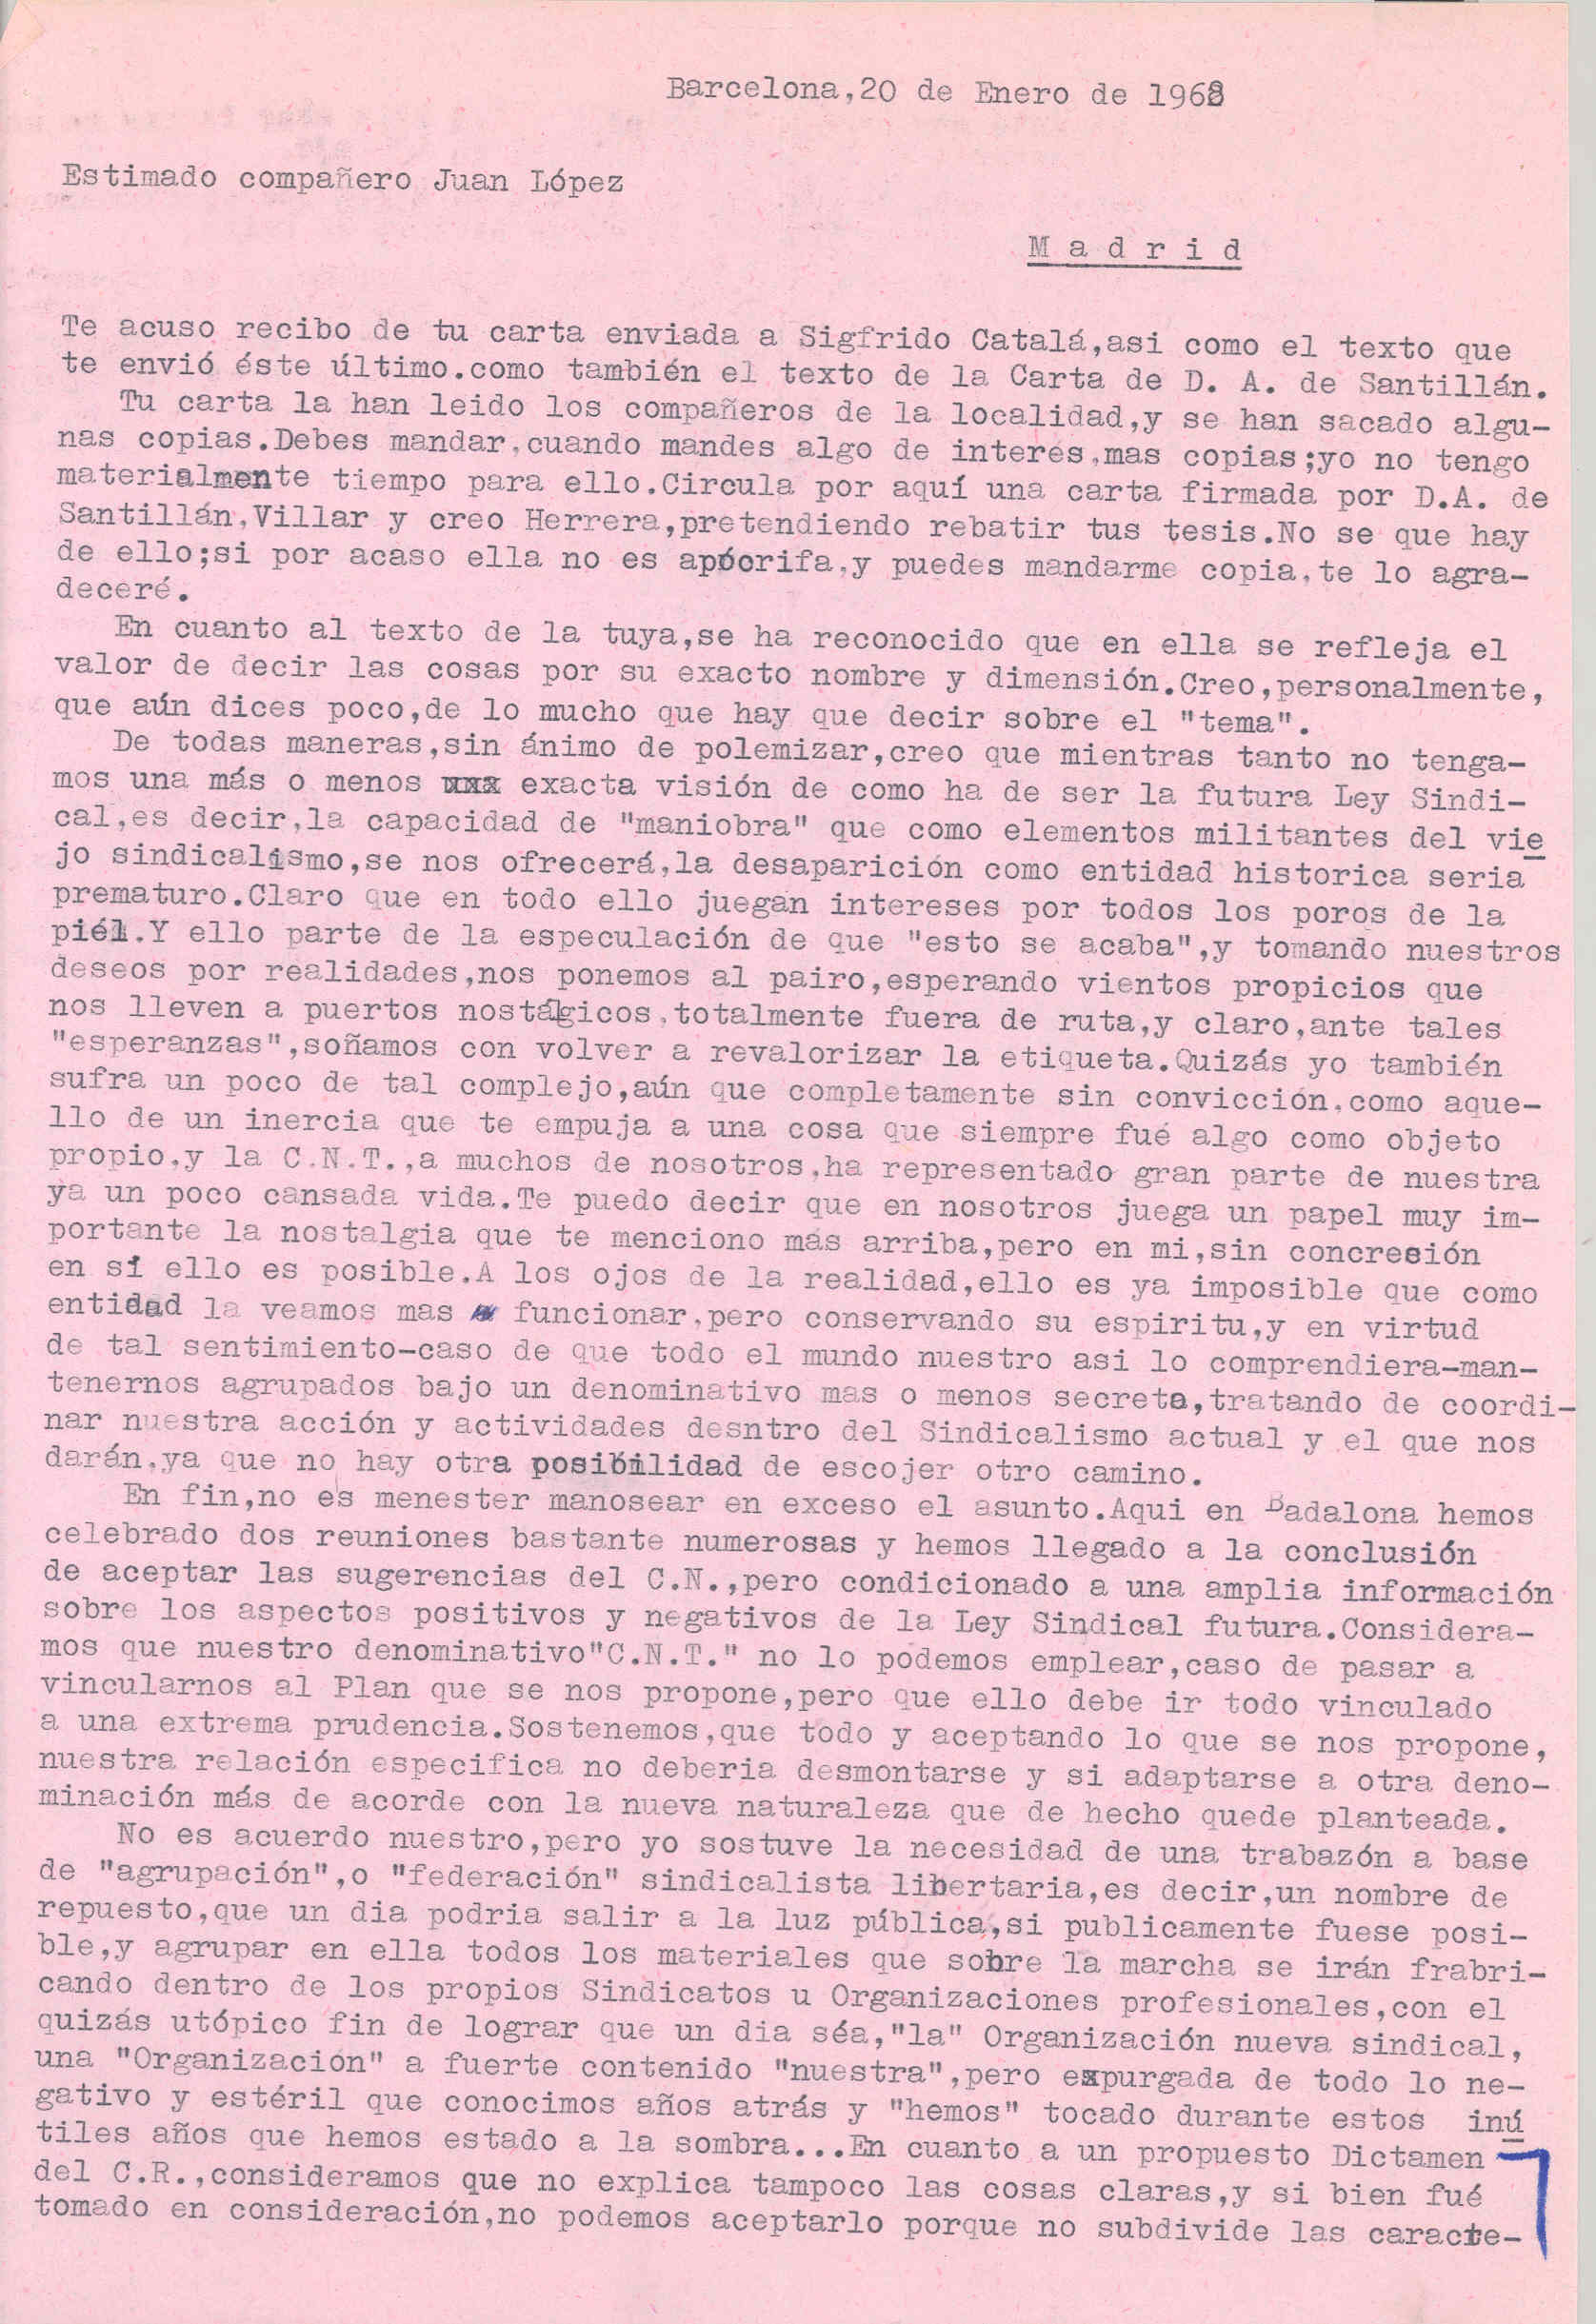 Carta de José Costa Font contando que han llegado a la conclusión de aceptar las sugerencias del Comité Nacional condicionado a amplia información de la Ley sindical.